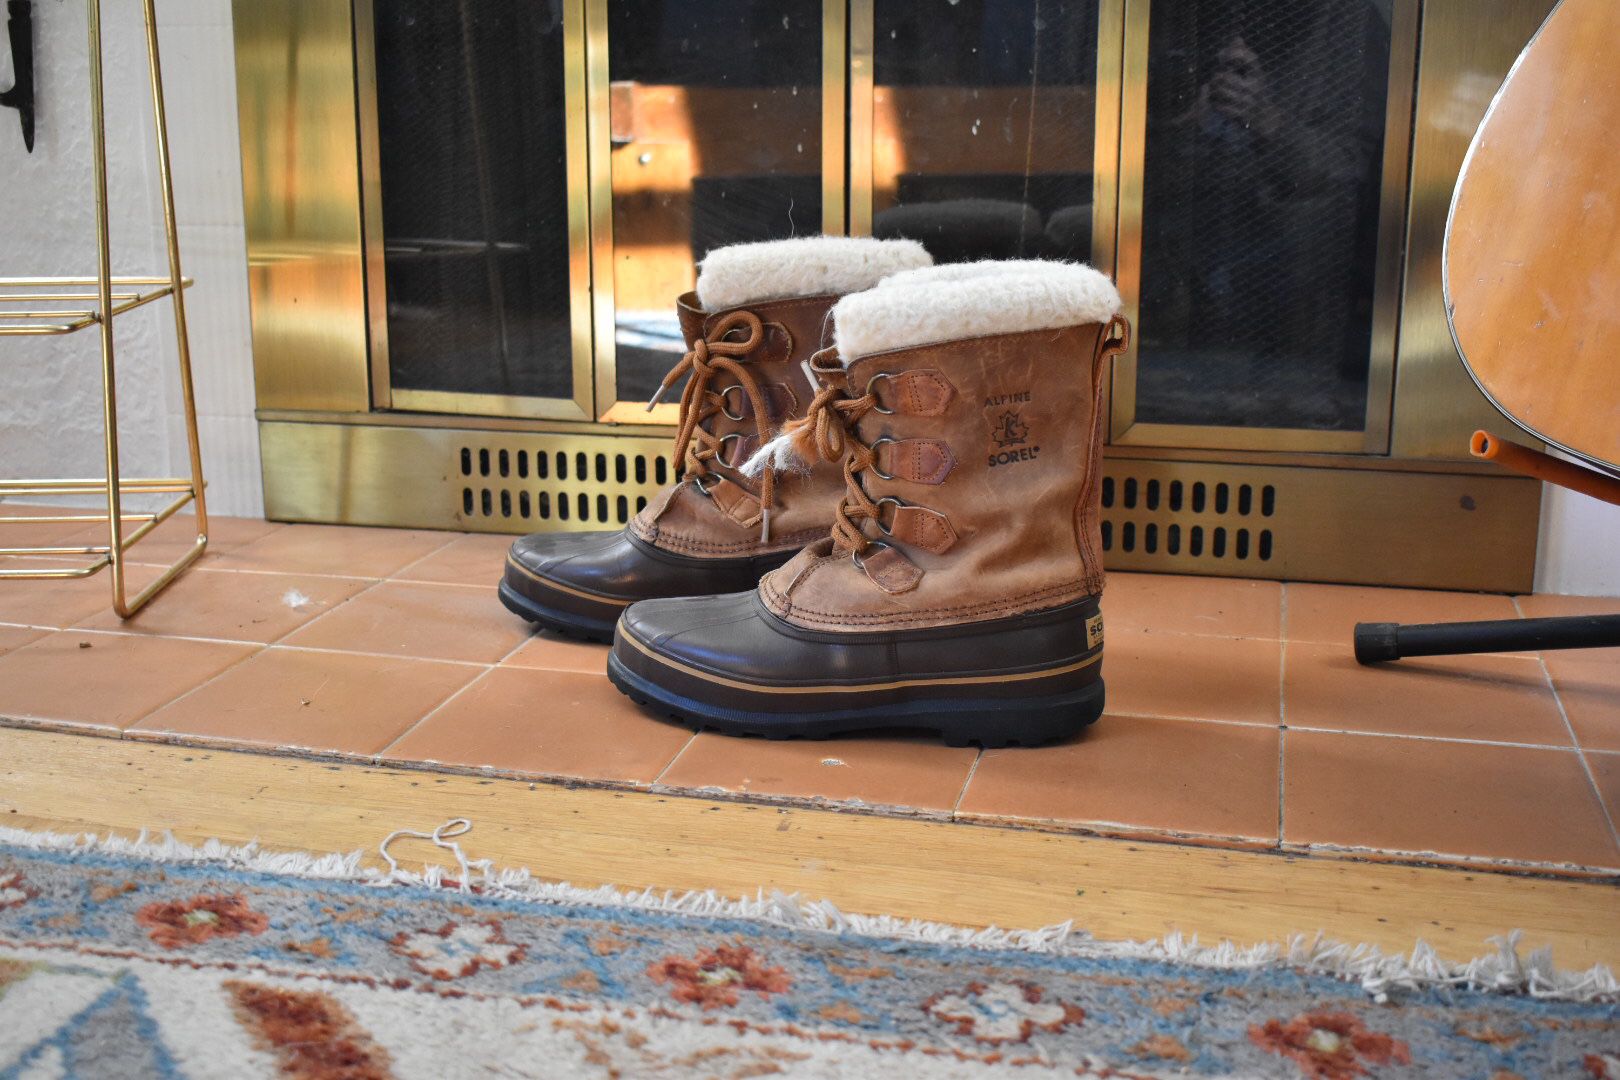 Sorel winter boots